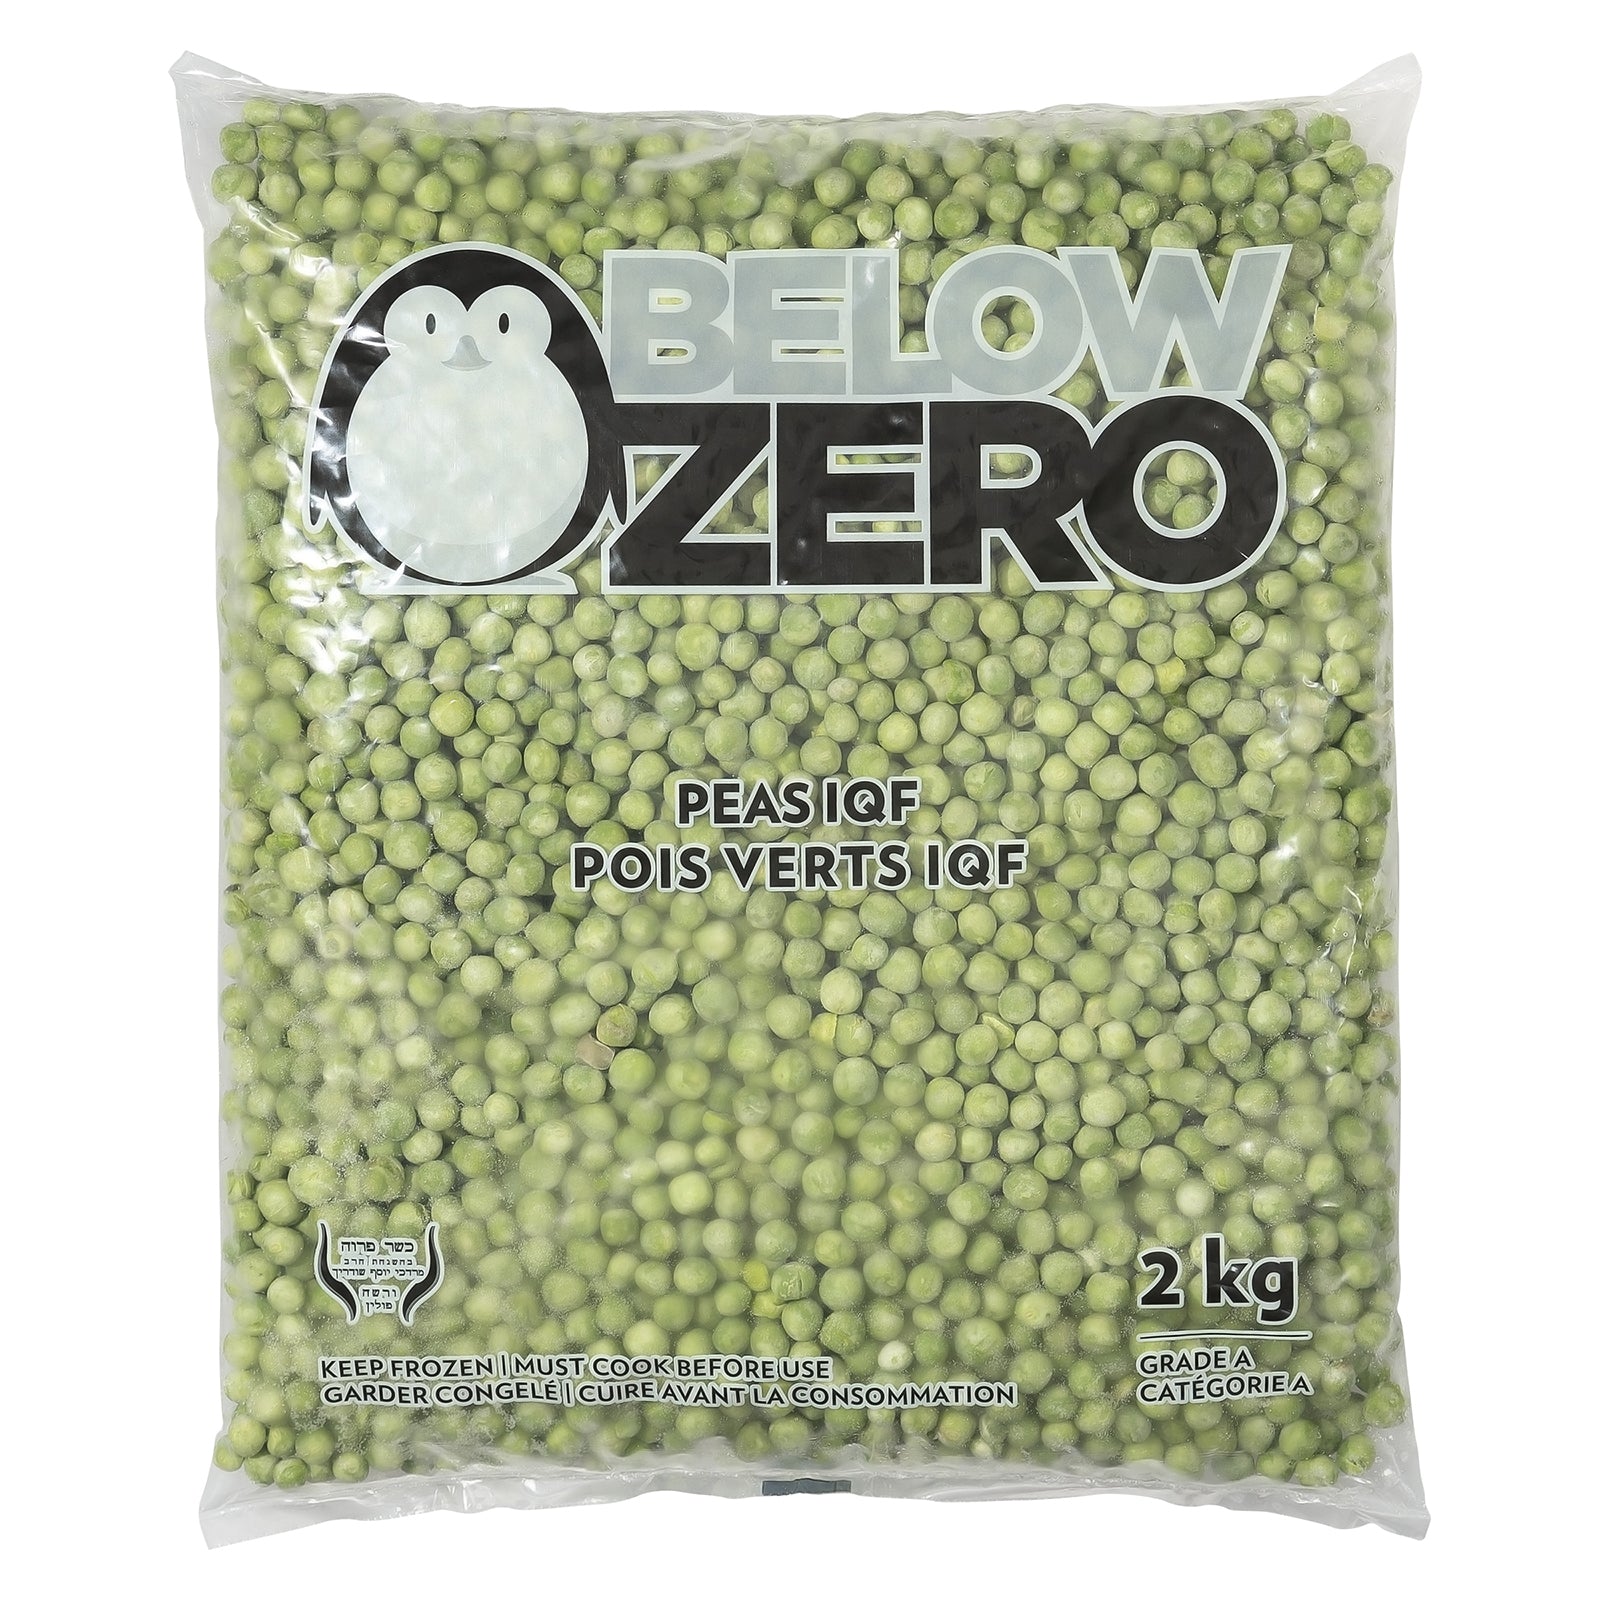 BELOW ZERO Peas